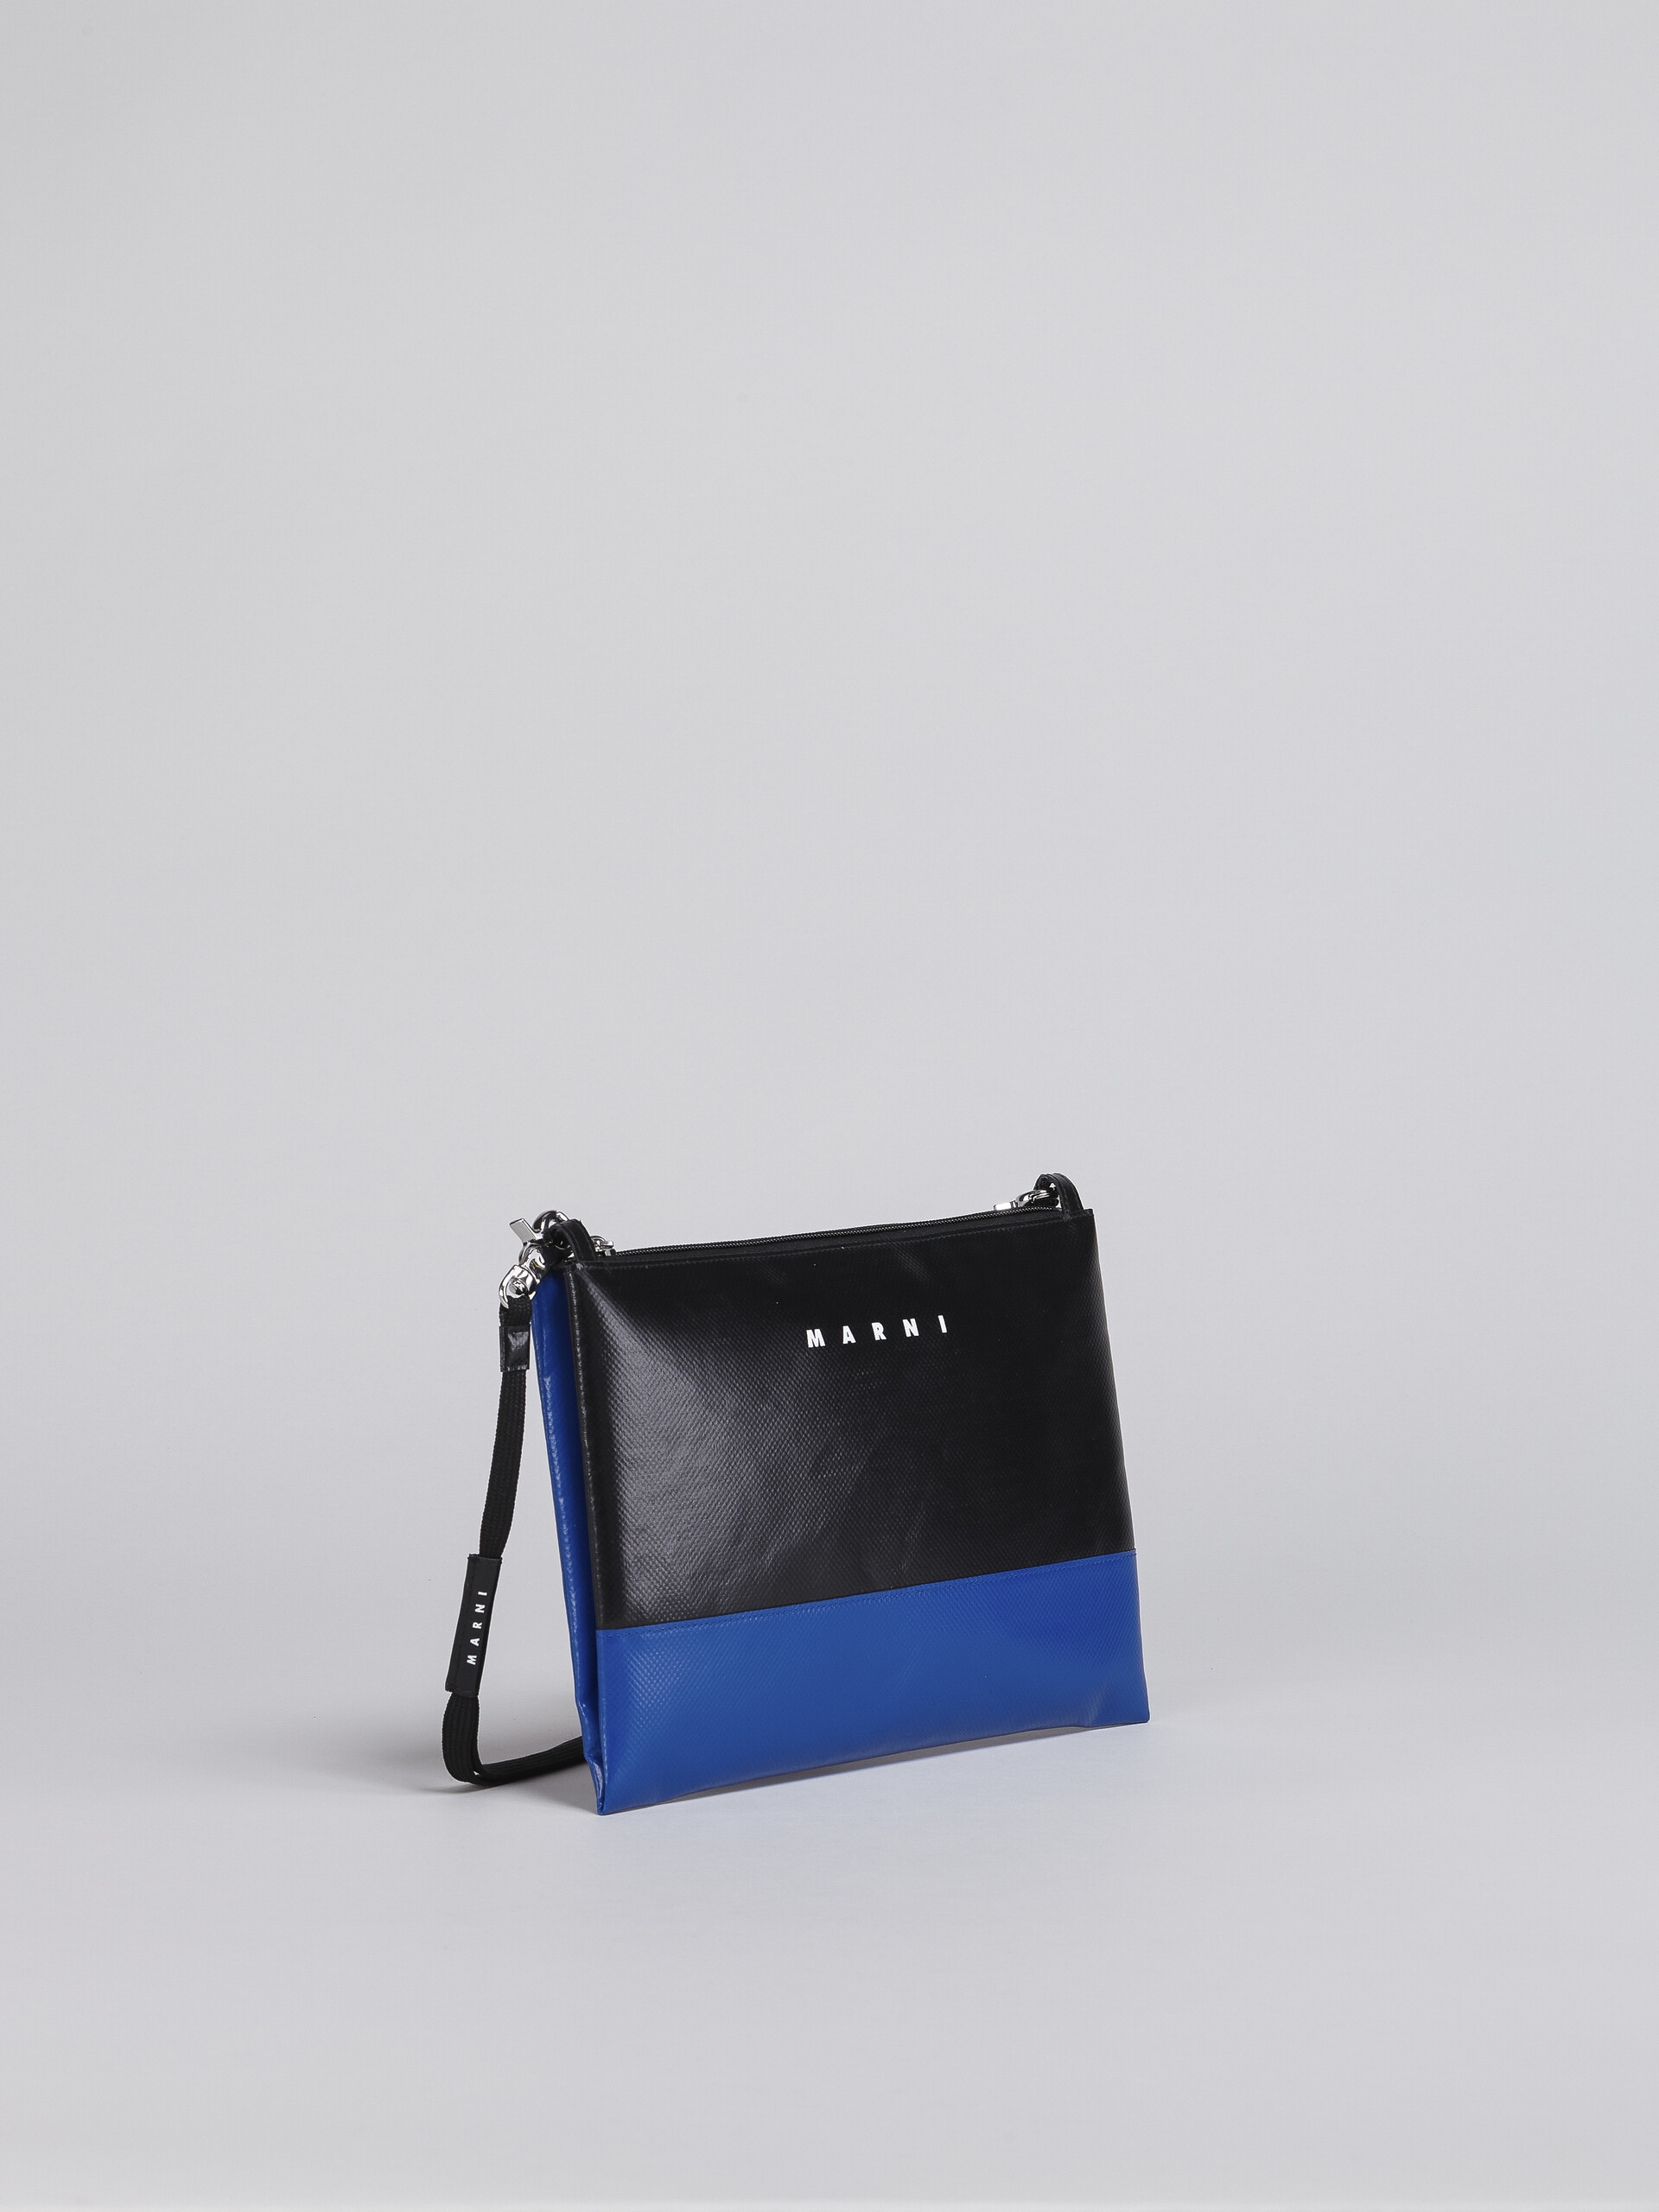 Black and blue TRIBECA crossbody bag - Shoulder Bag - Image 6